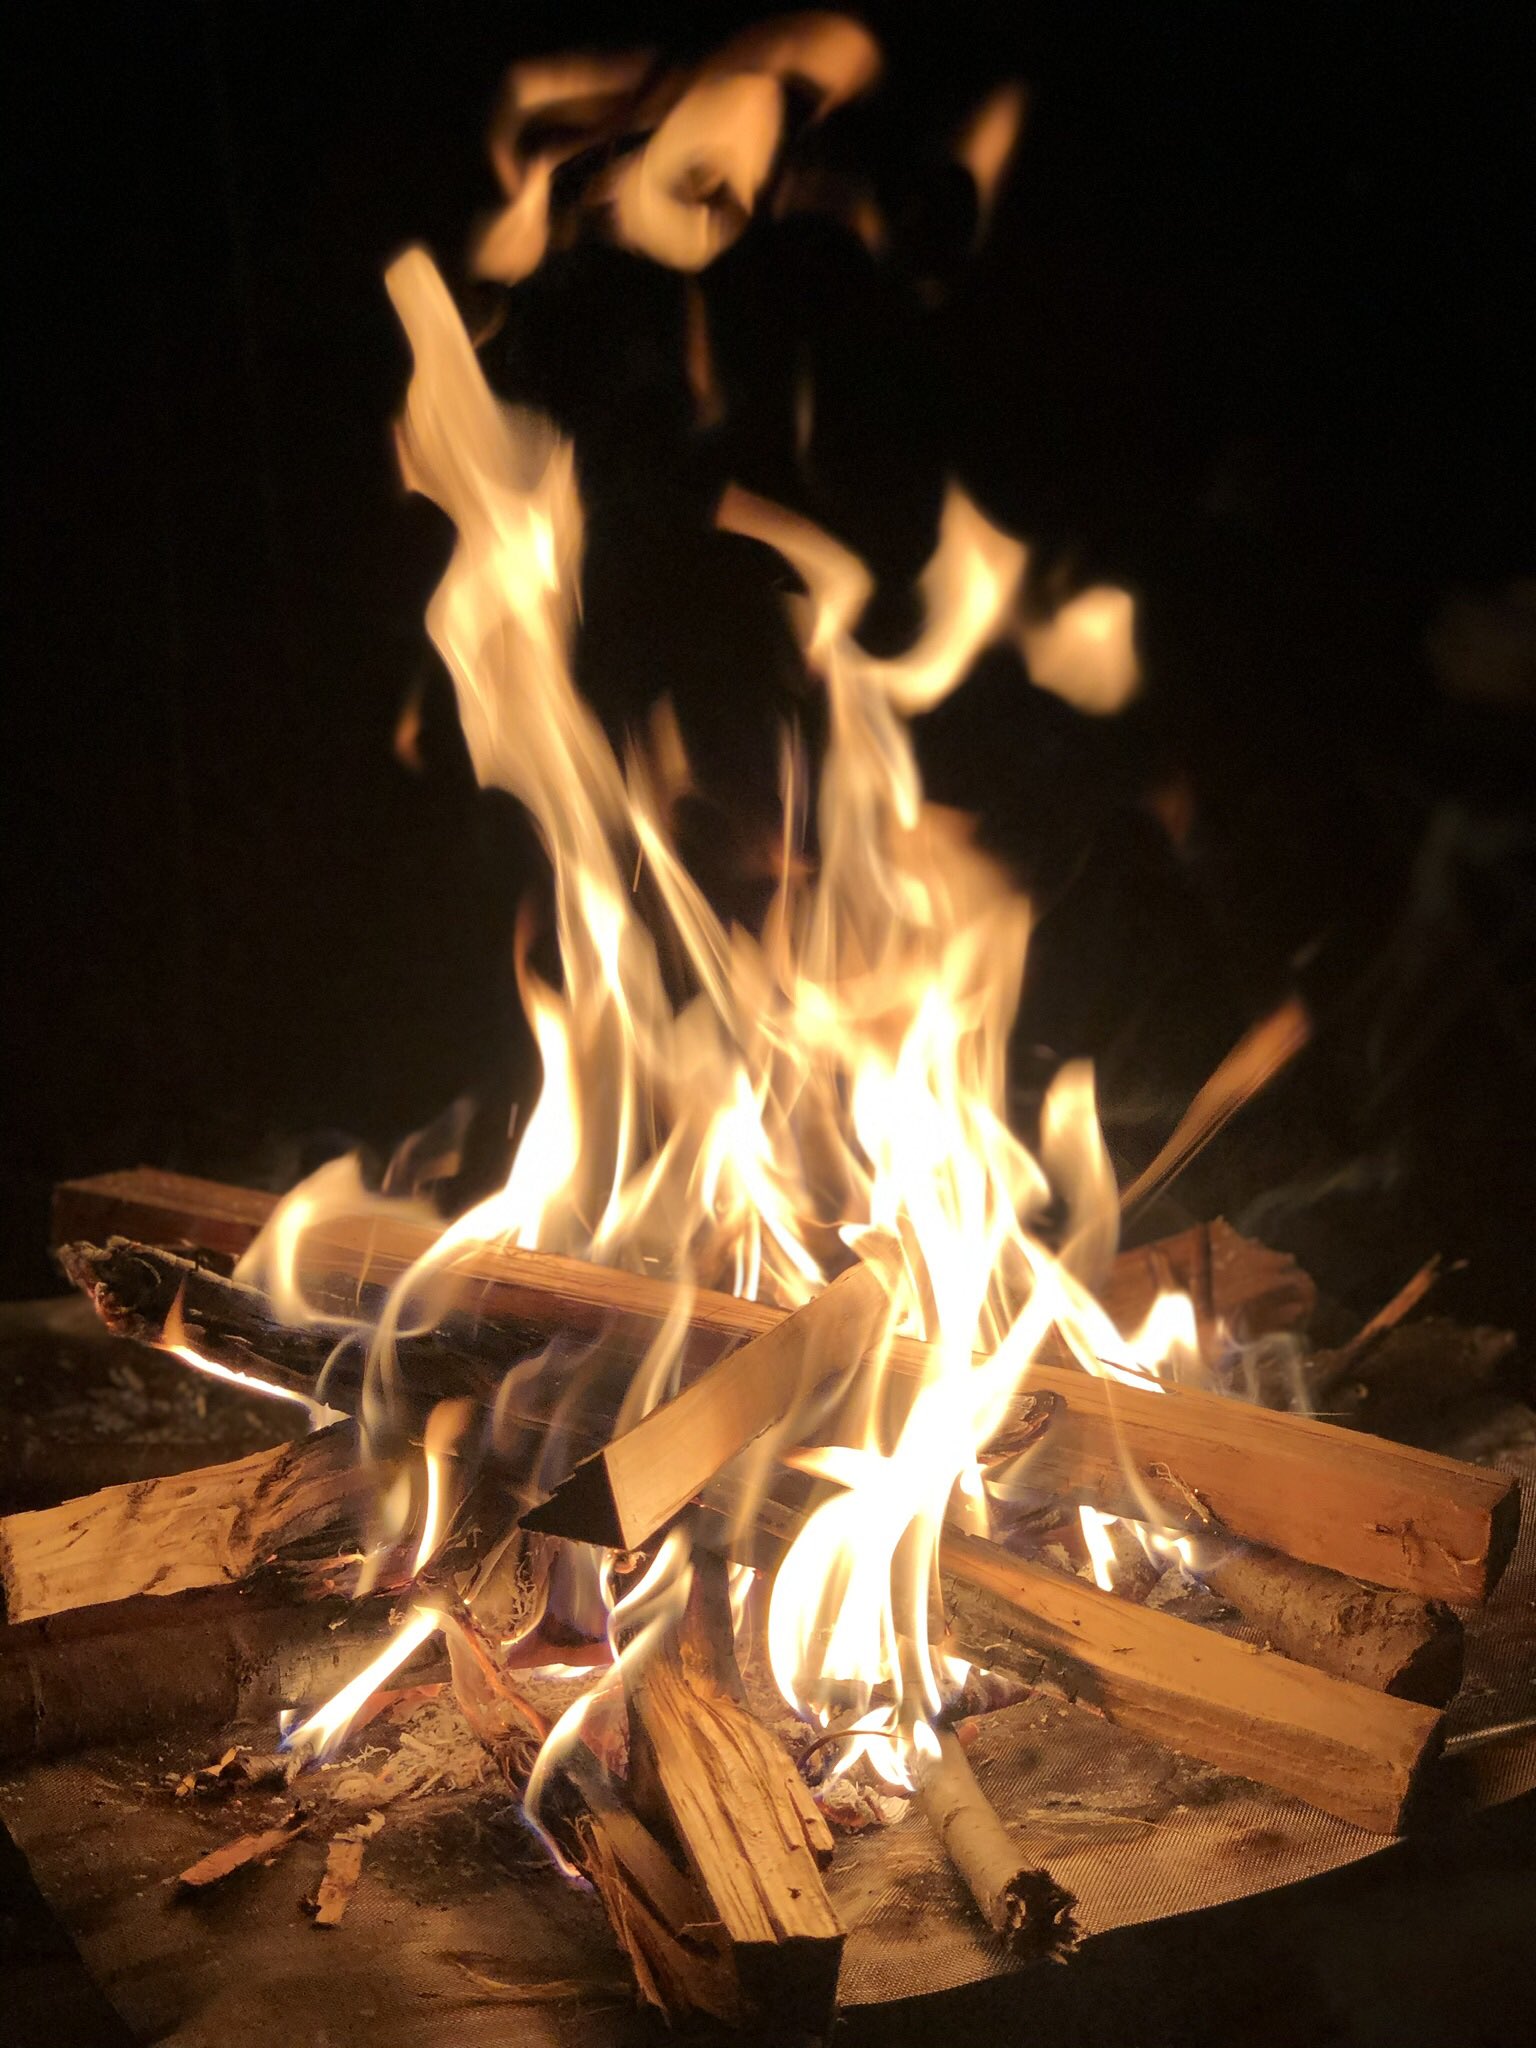 はっさく なかなかキャンプに行けず ひとます私のお気に入りの焚き火写真置いときます Iphoneのカメラも優秀です 最近はiphoneの壁紙に設定して癒されています キャンプ キャンプ好きと繋がりたい 焚き火 T Co Nzz4f40qju Twitter